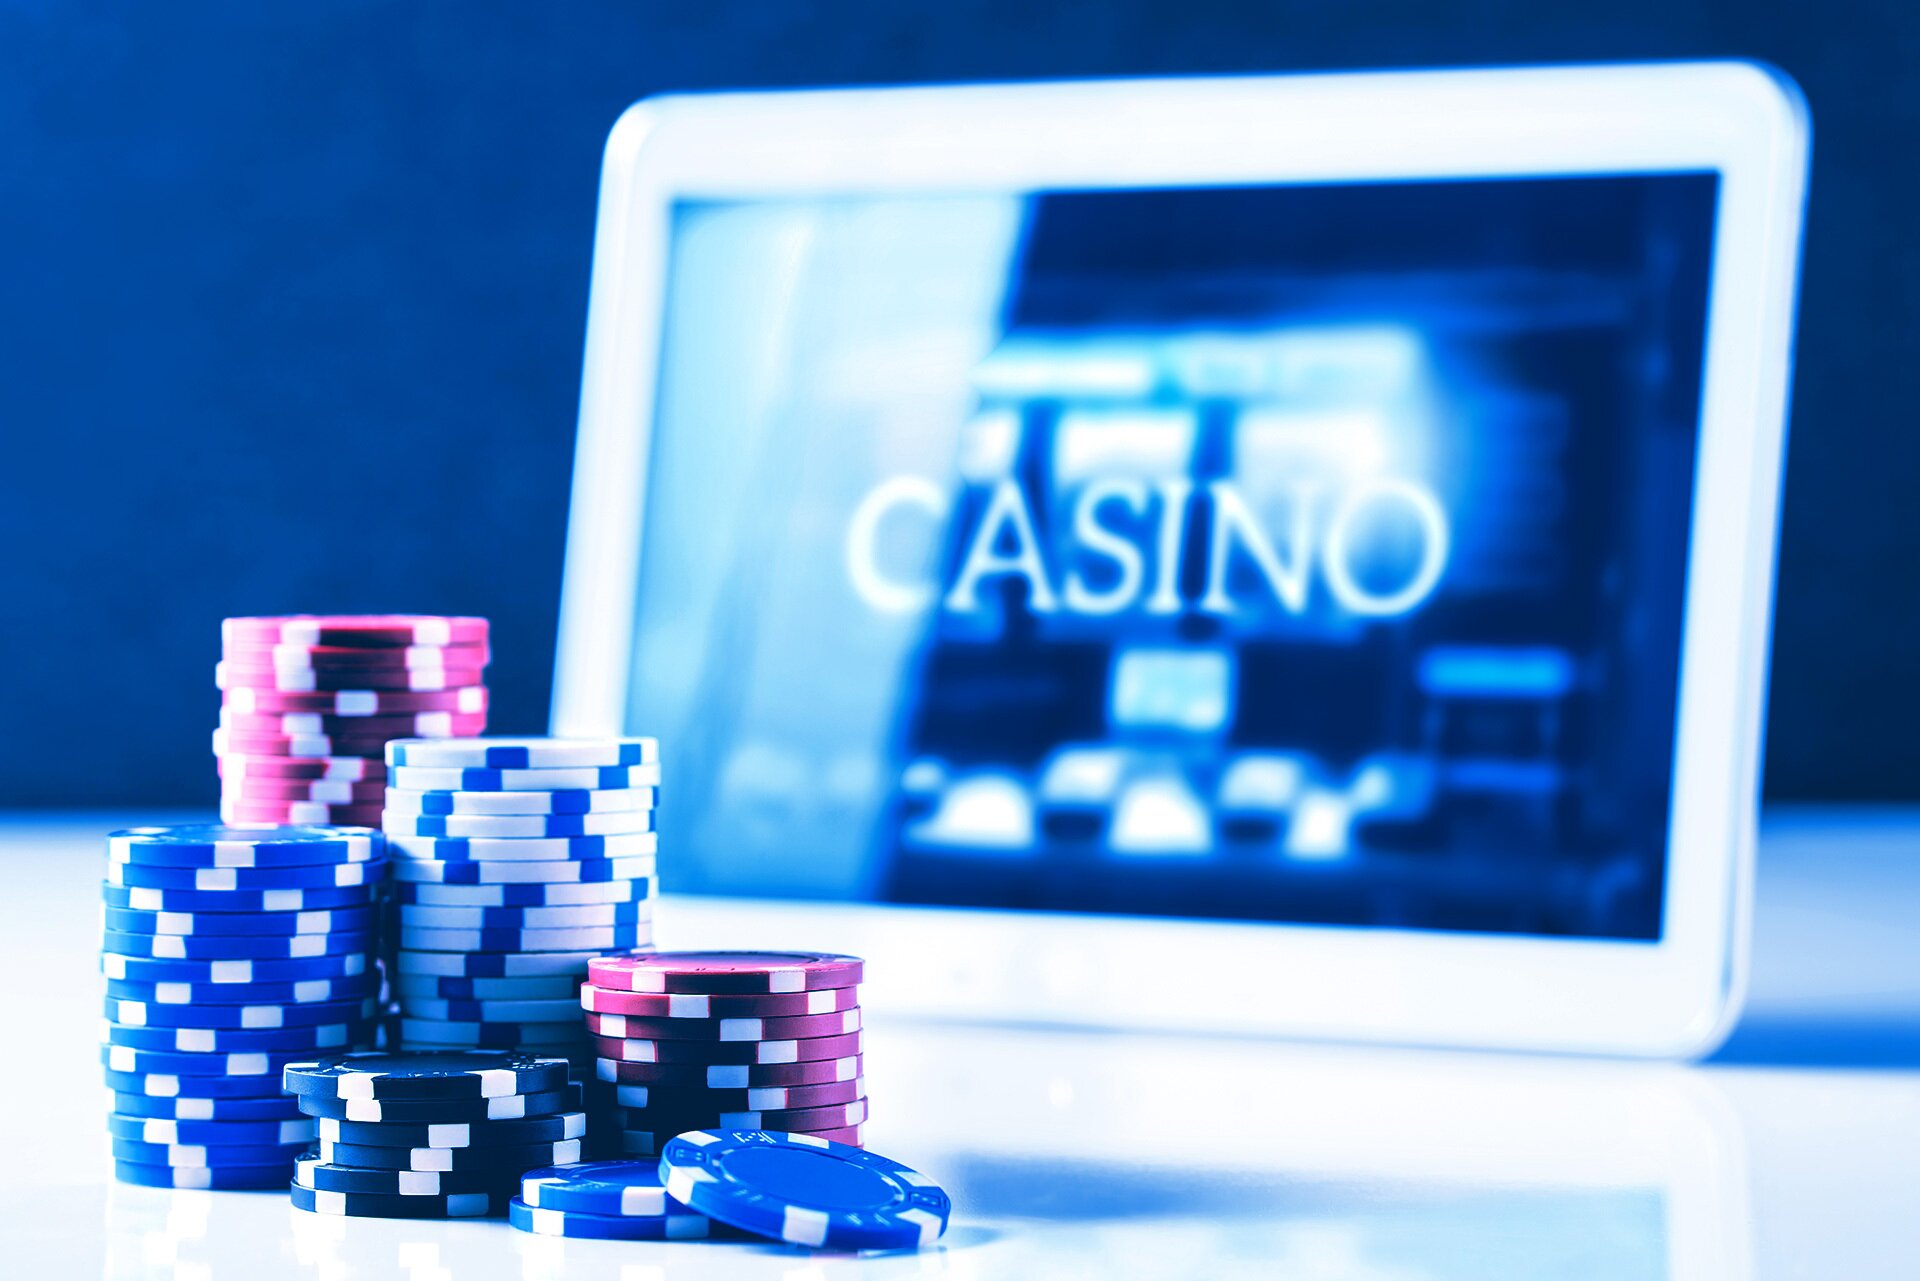 california online casino